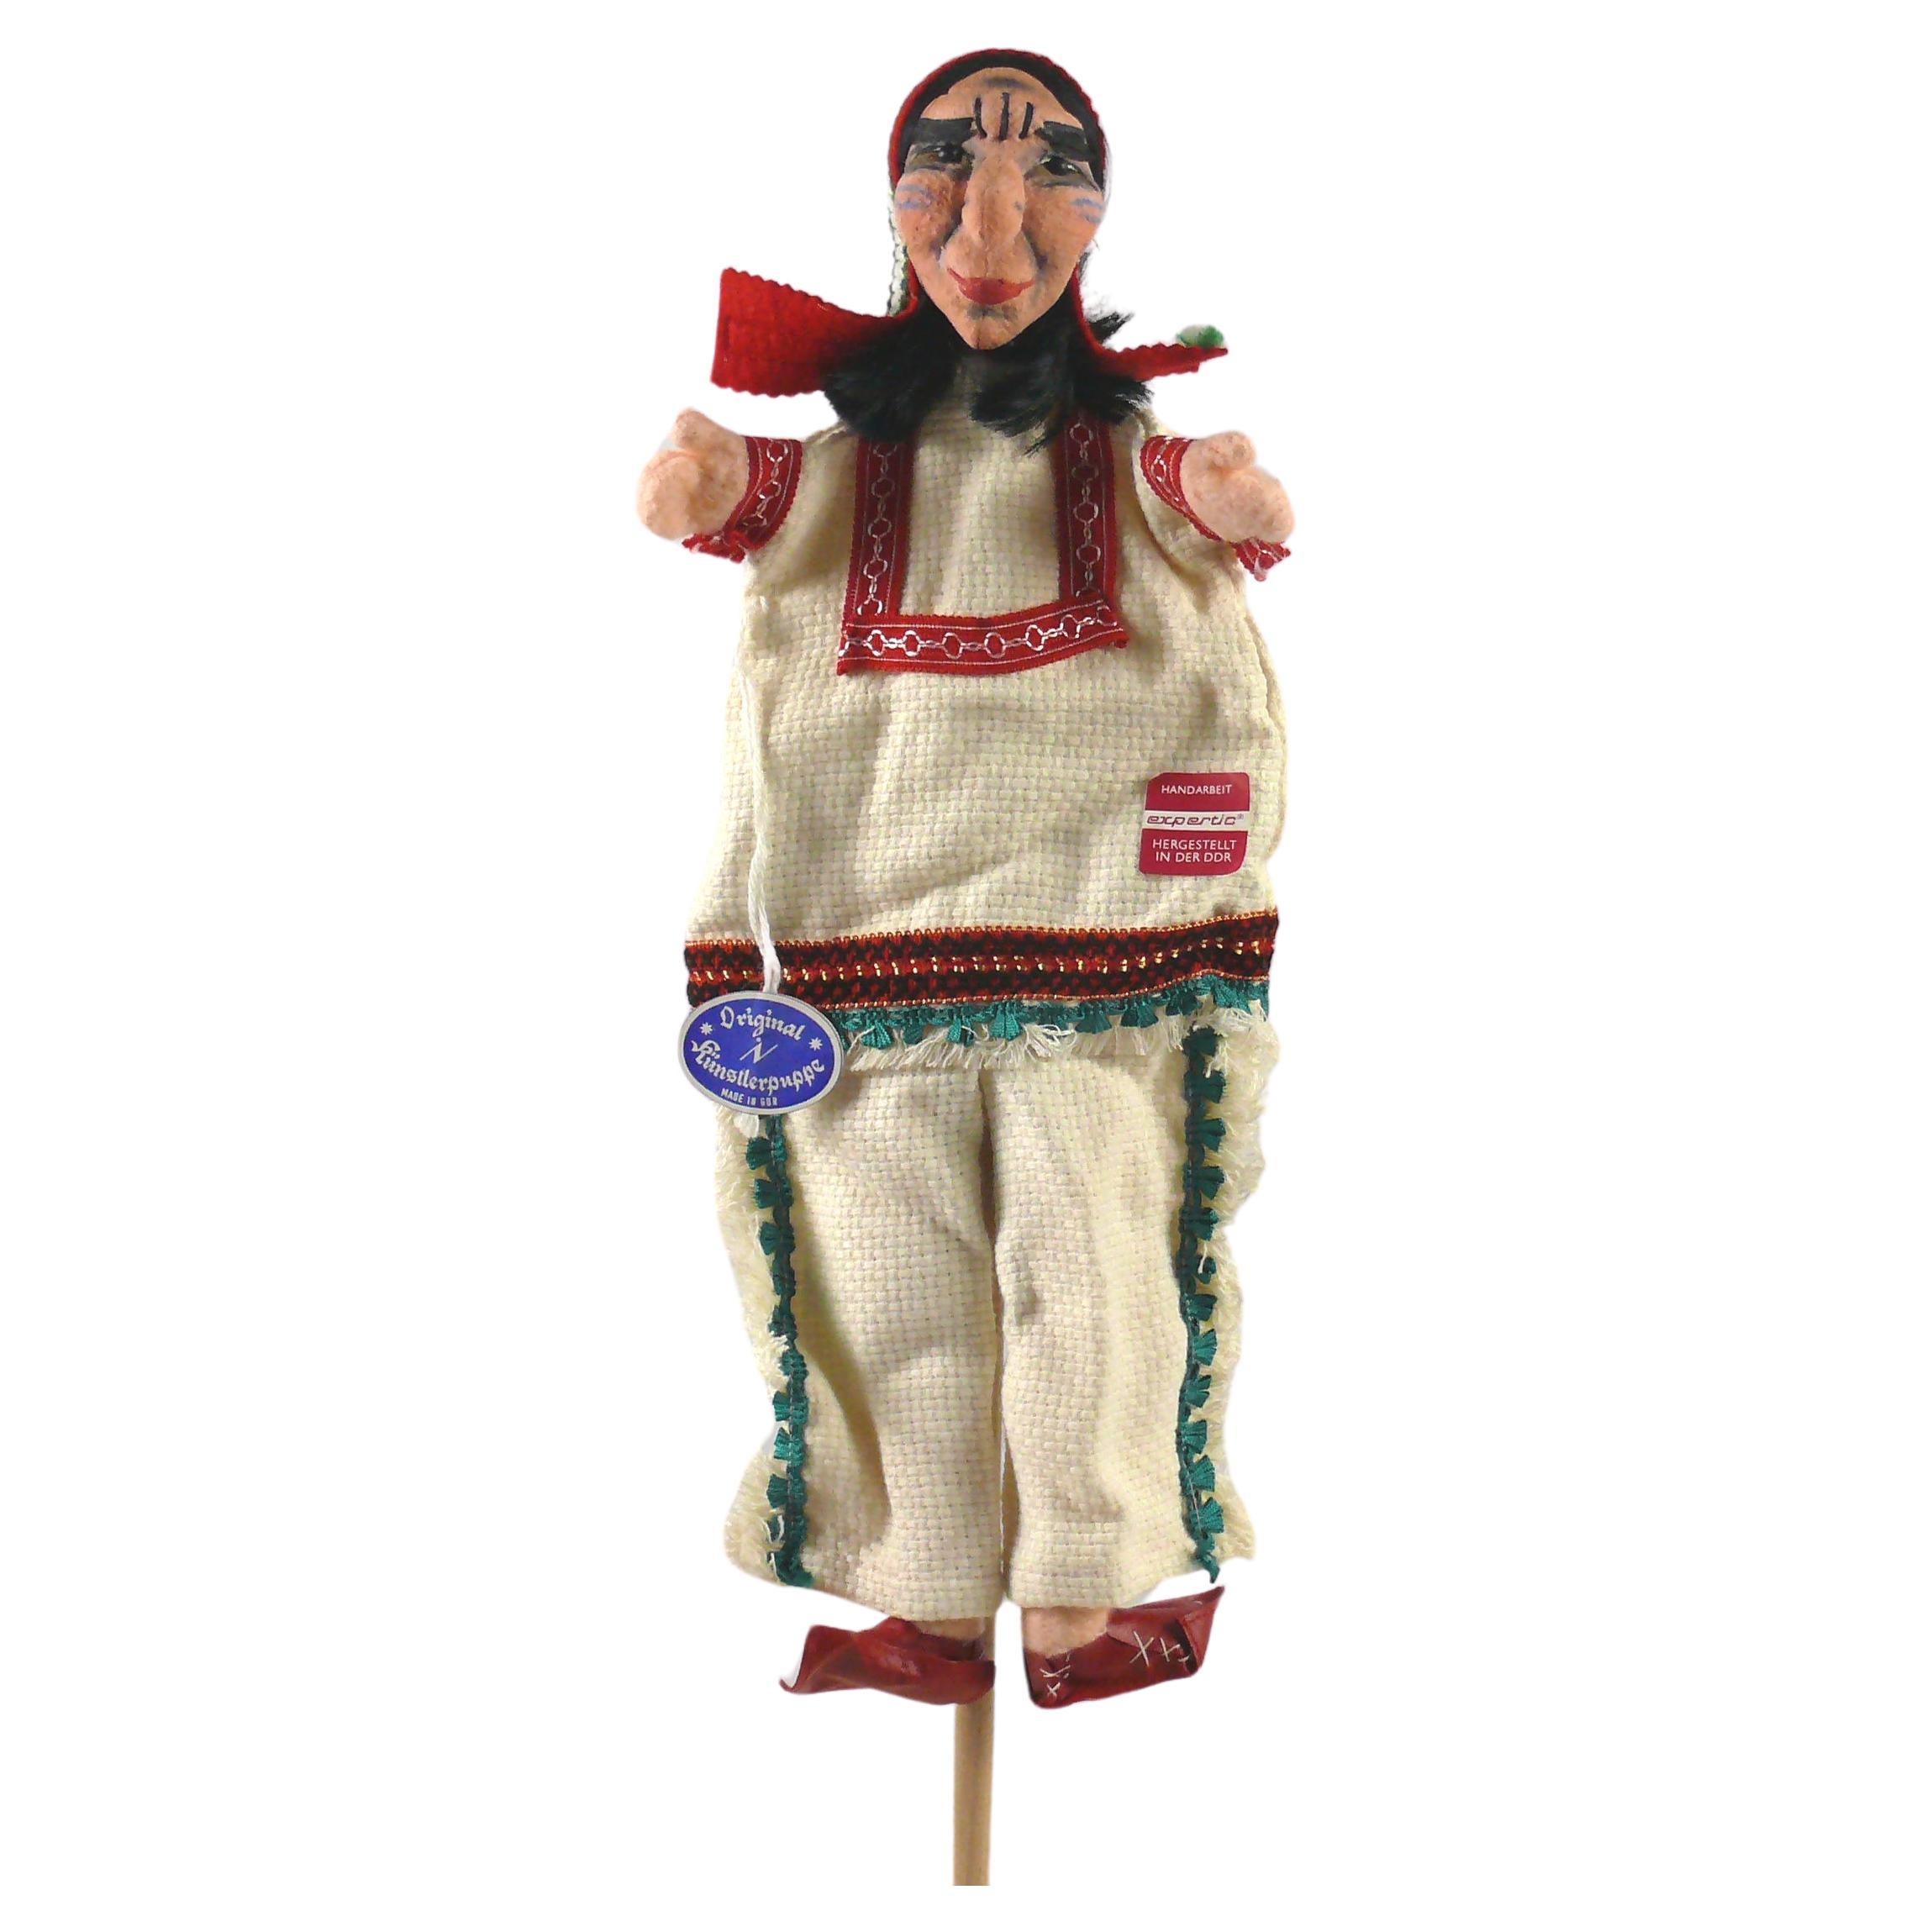 Handgefertigte Original Dresdner Künstlerpuppen / handgefertigte Puppe - indianische Frau, 1970er Jahre